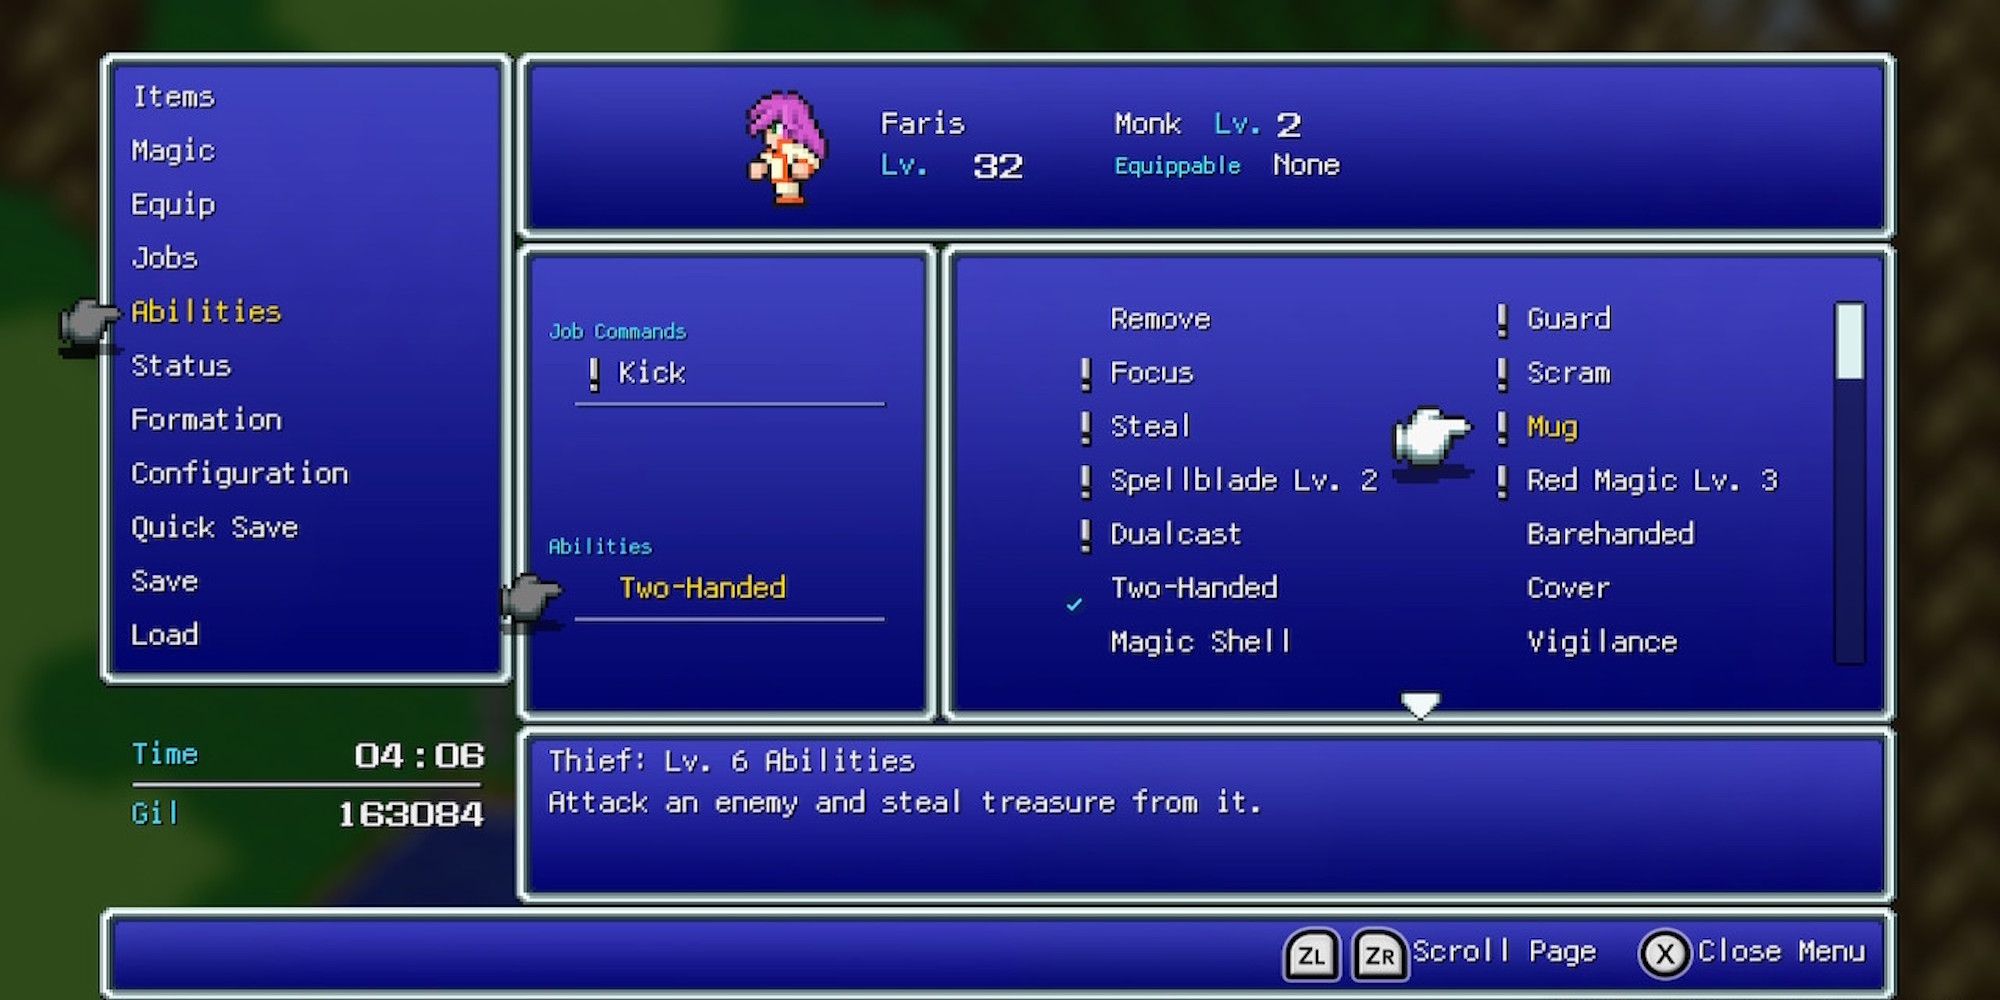 Mug ability in Final Fantasy 5